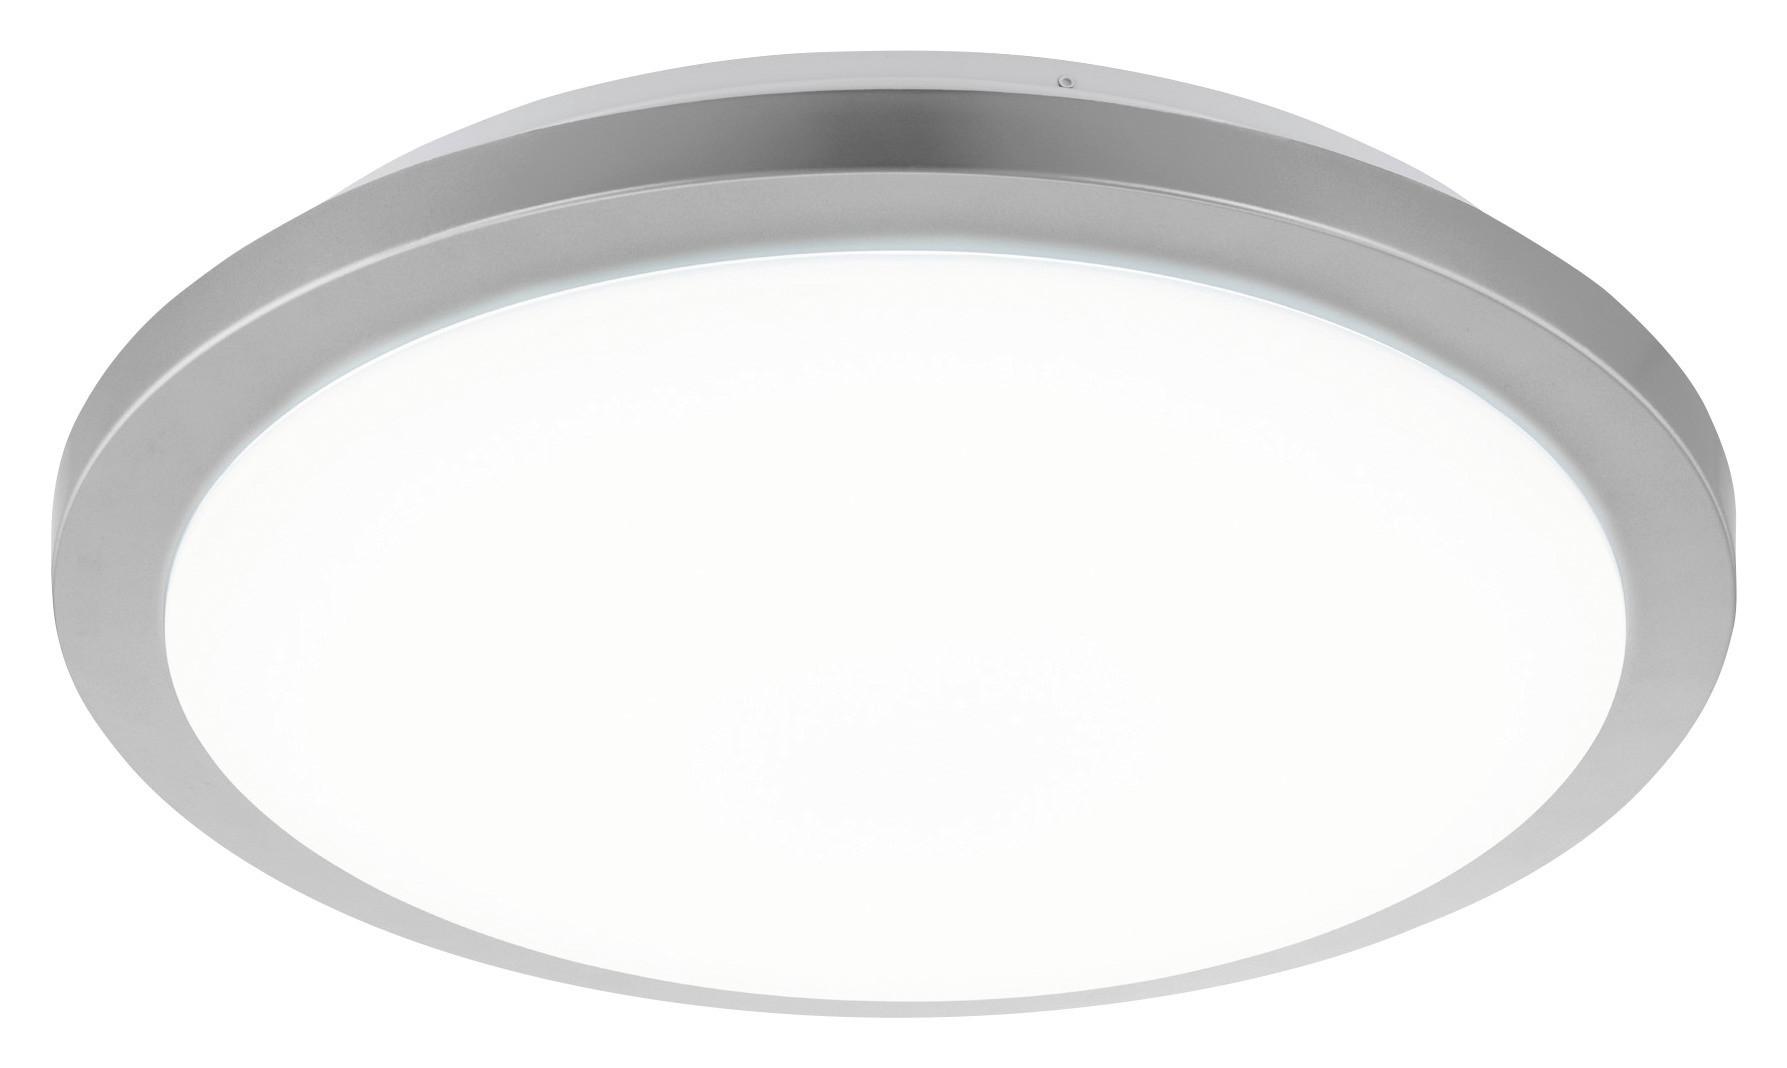 LED-Deckenleuchte Competa-St Ø 51 cm 4-Fach Schaltbar - Silberfarben/Weiß, Basics, Kunststoff/Metall (51/11cm)